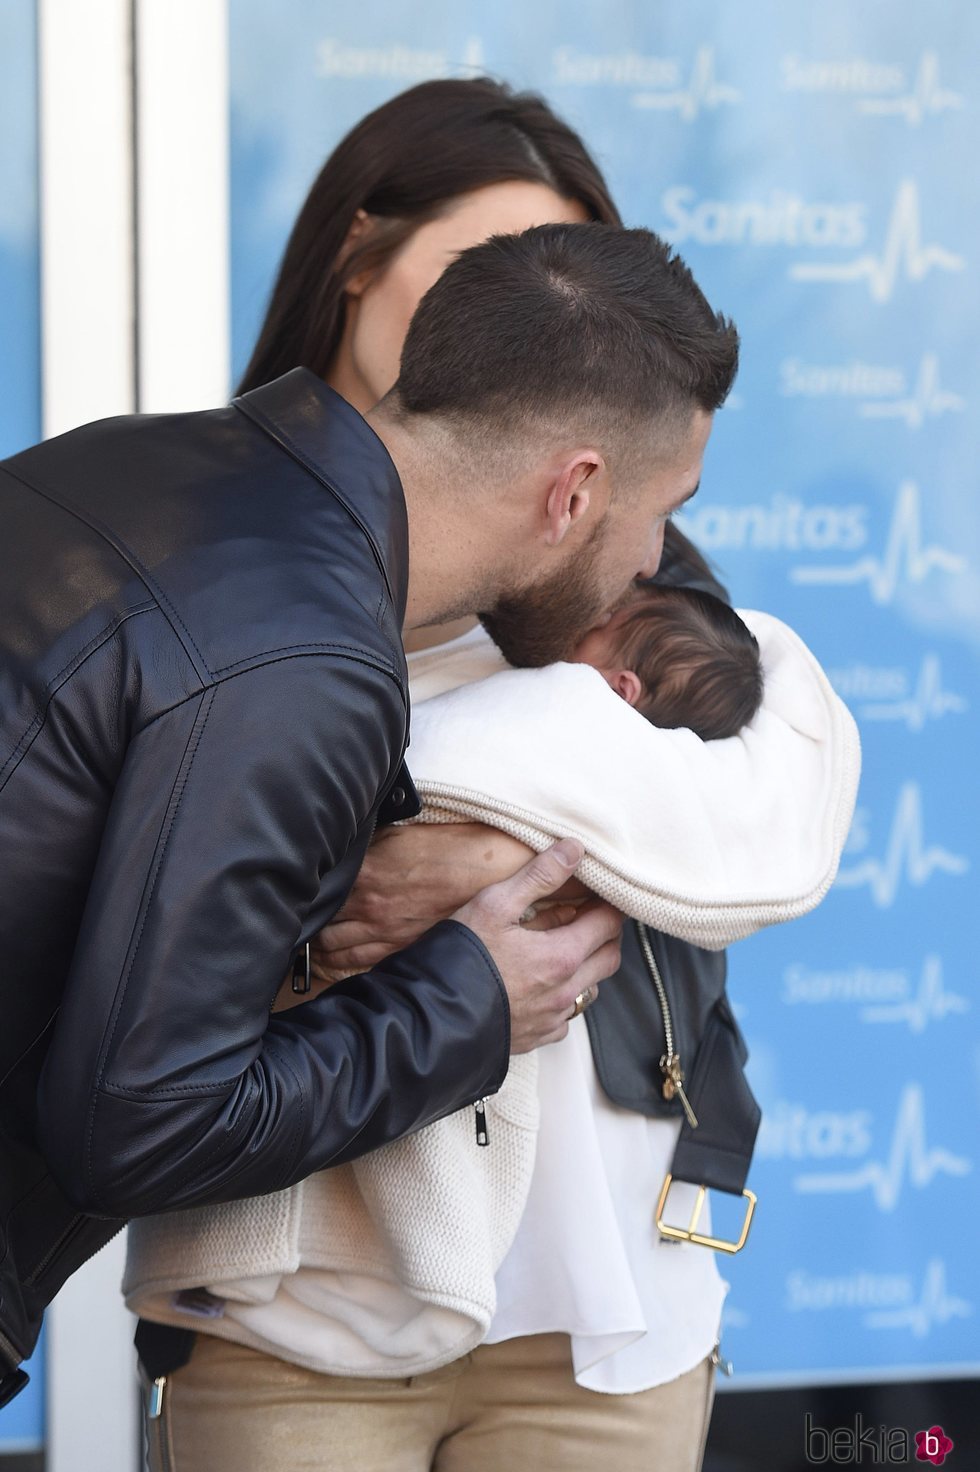 Sergio Ramos besando a su hijo Marco en su presentación oficial